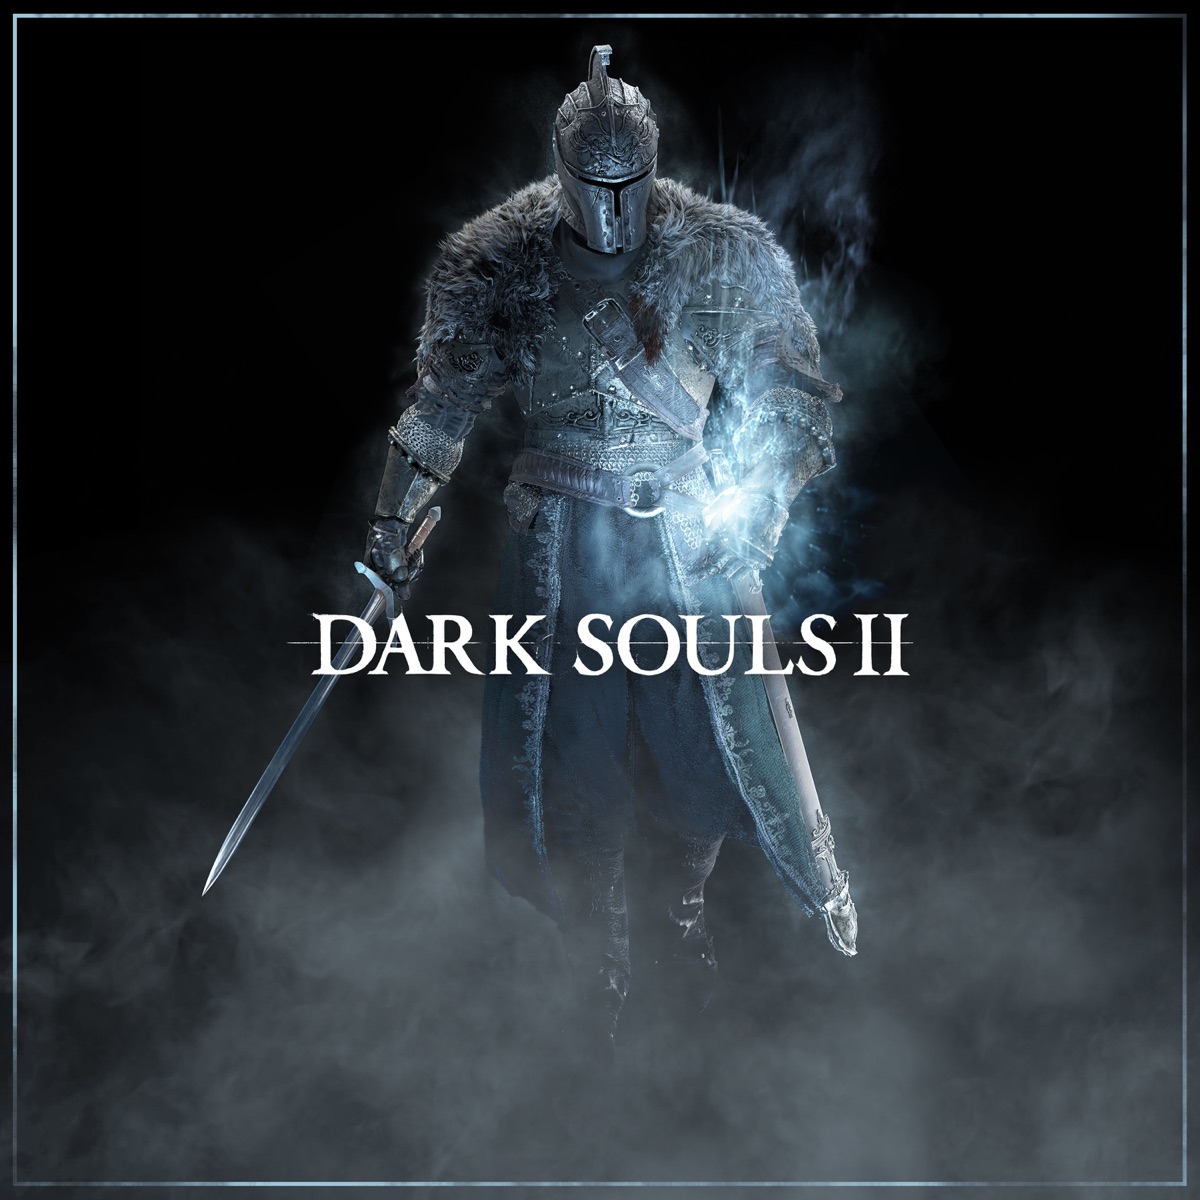 Dark Souls II Soundtrack Download